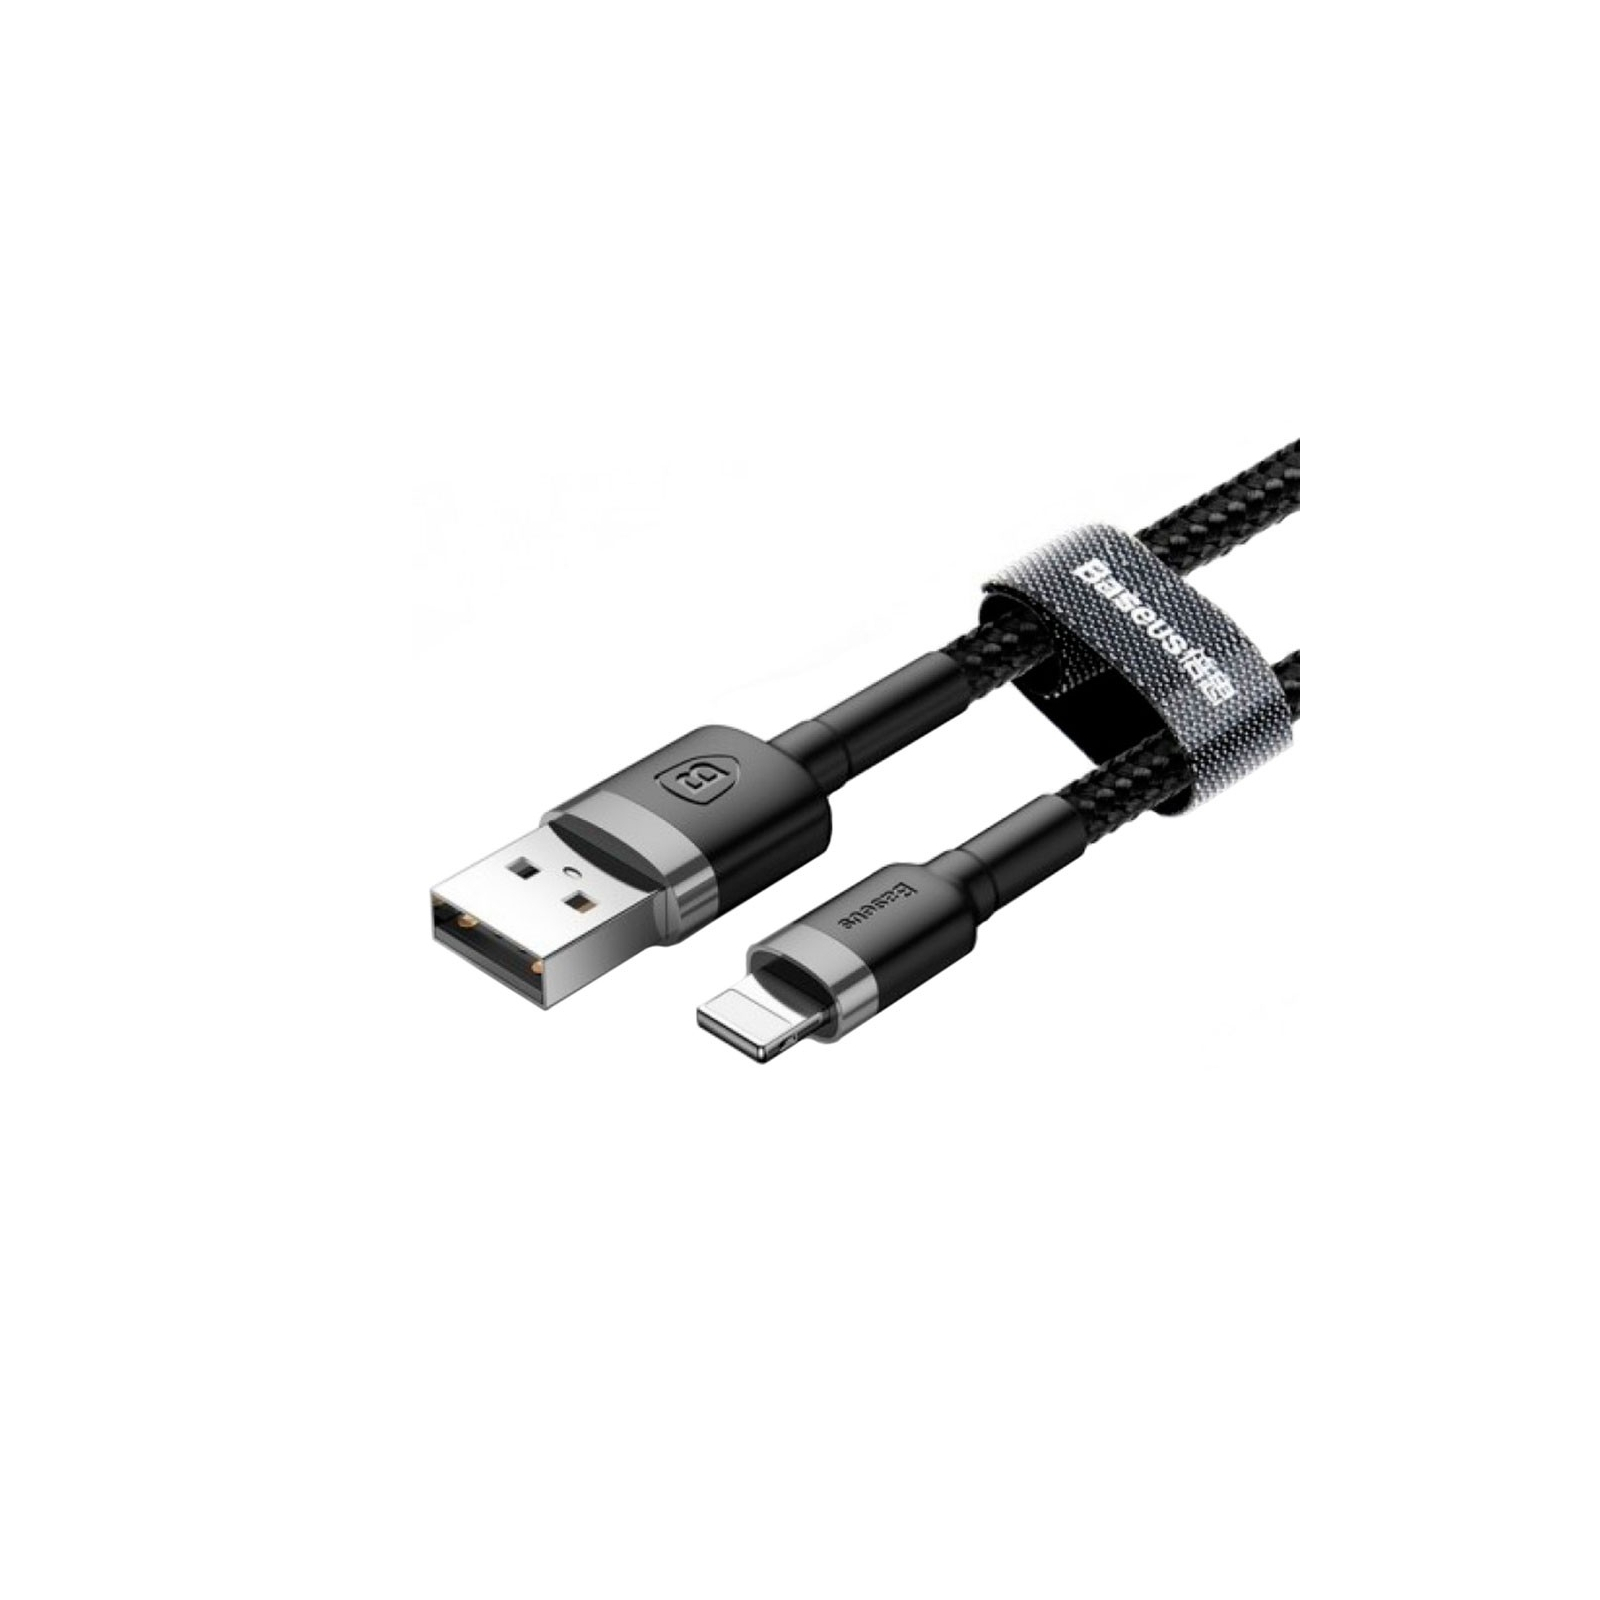 Дата кабель USB 2.0 AM to Lightning 0.5m Cafule 2.4A grey+black Baseus (CALKLF-AG1) изображение 2